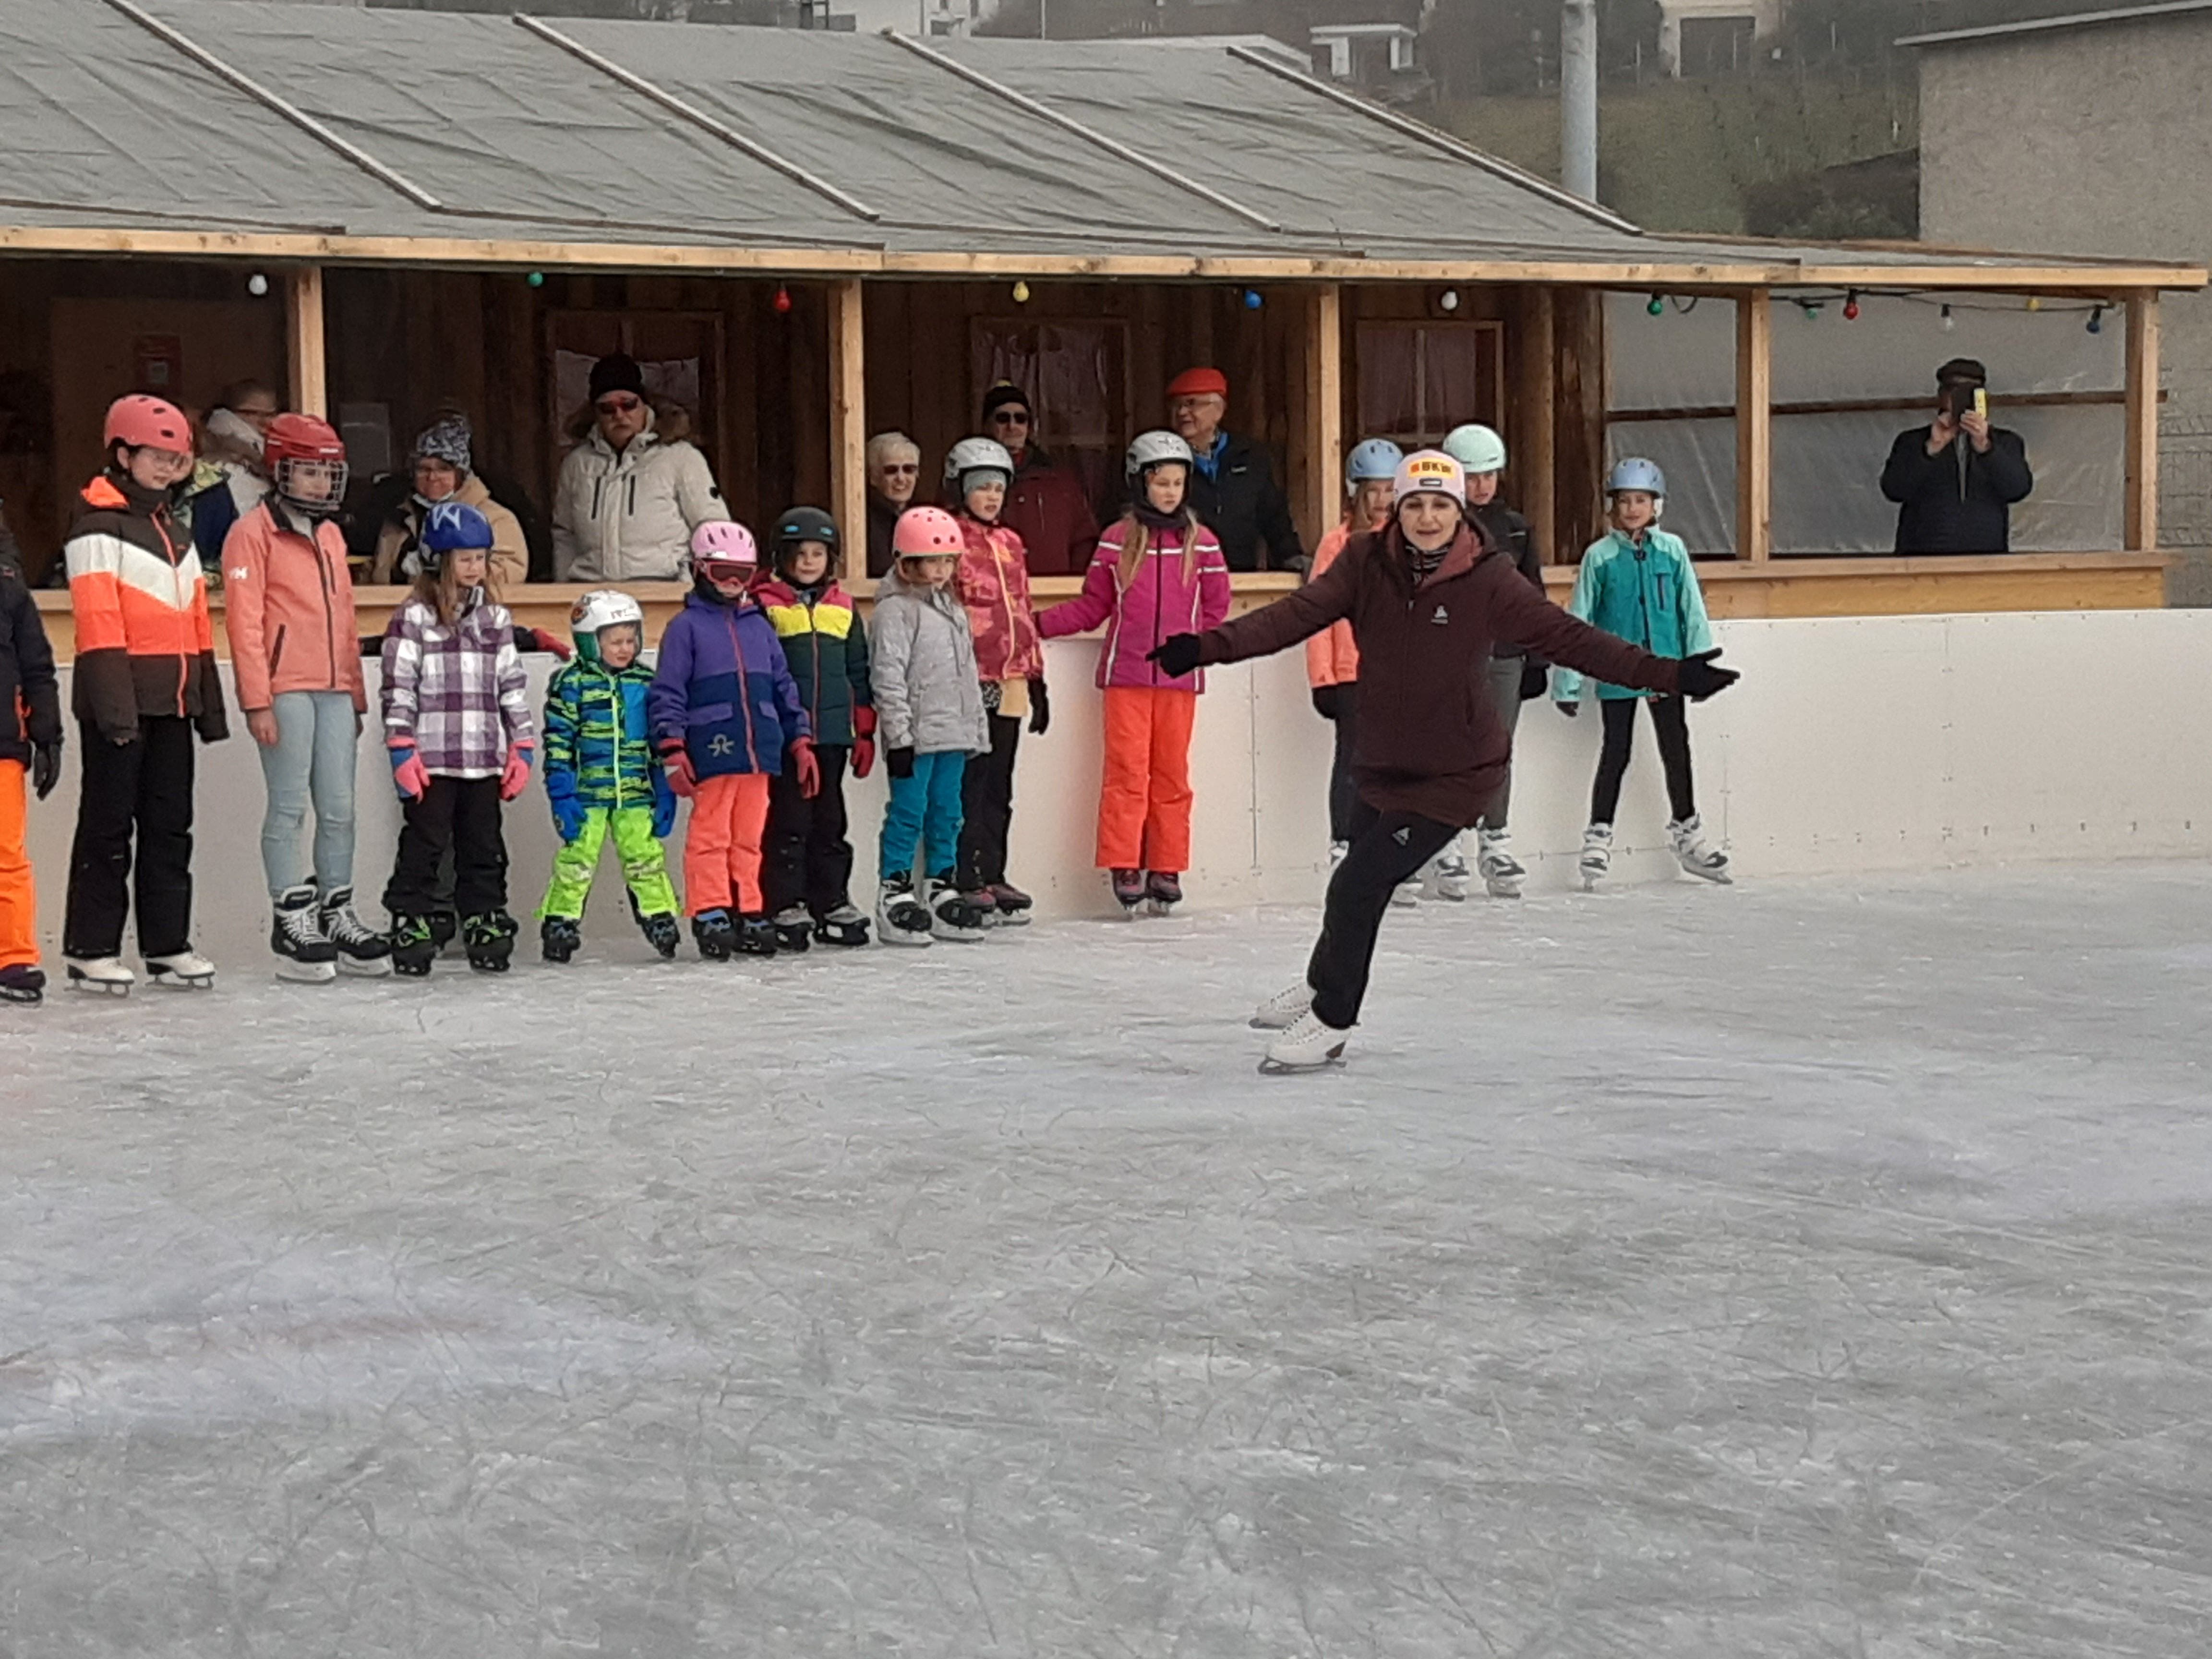 Die Kinder sehen aufmerksam zu, als Eiskunstläuferin Sarah van Berkel die nächste Übung erklärt.